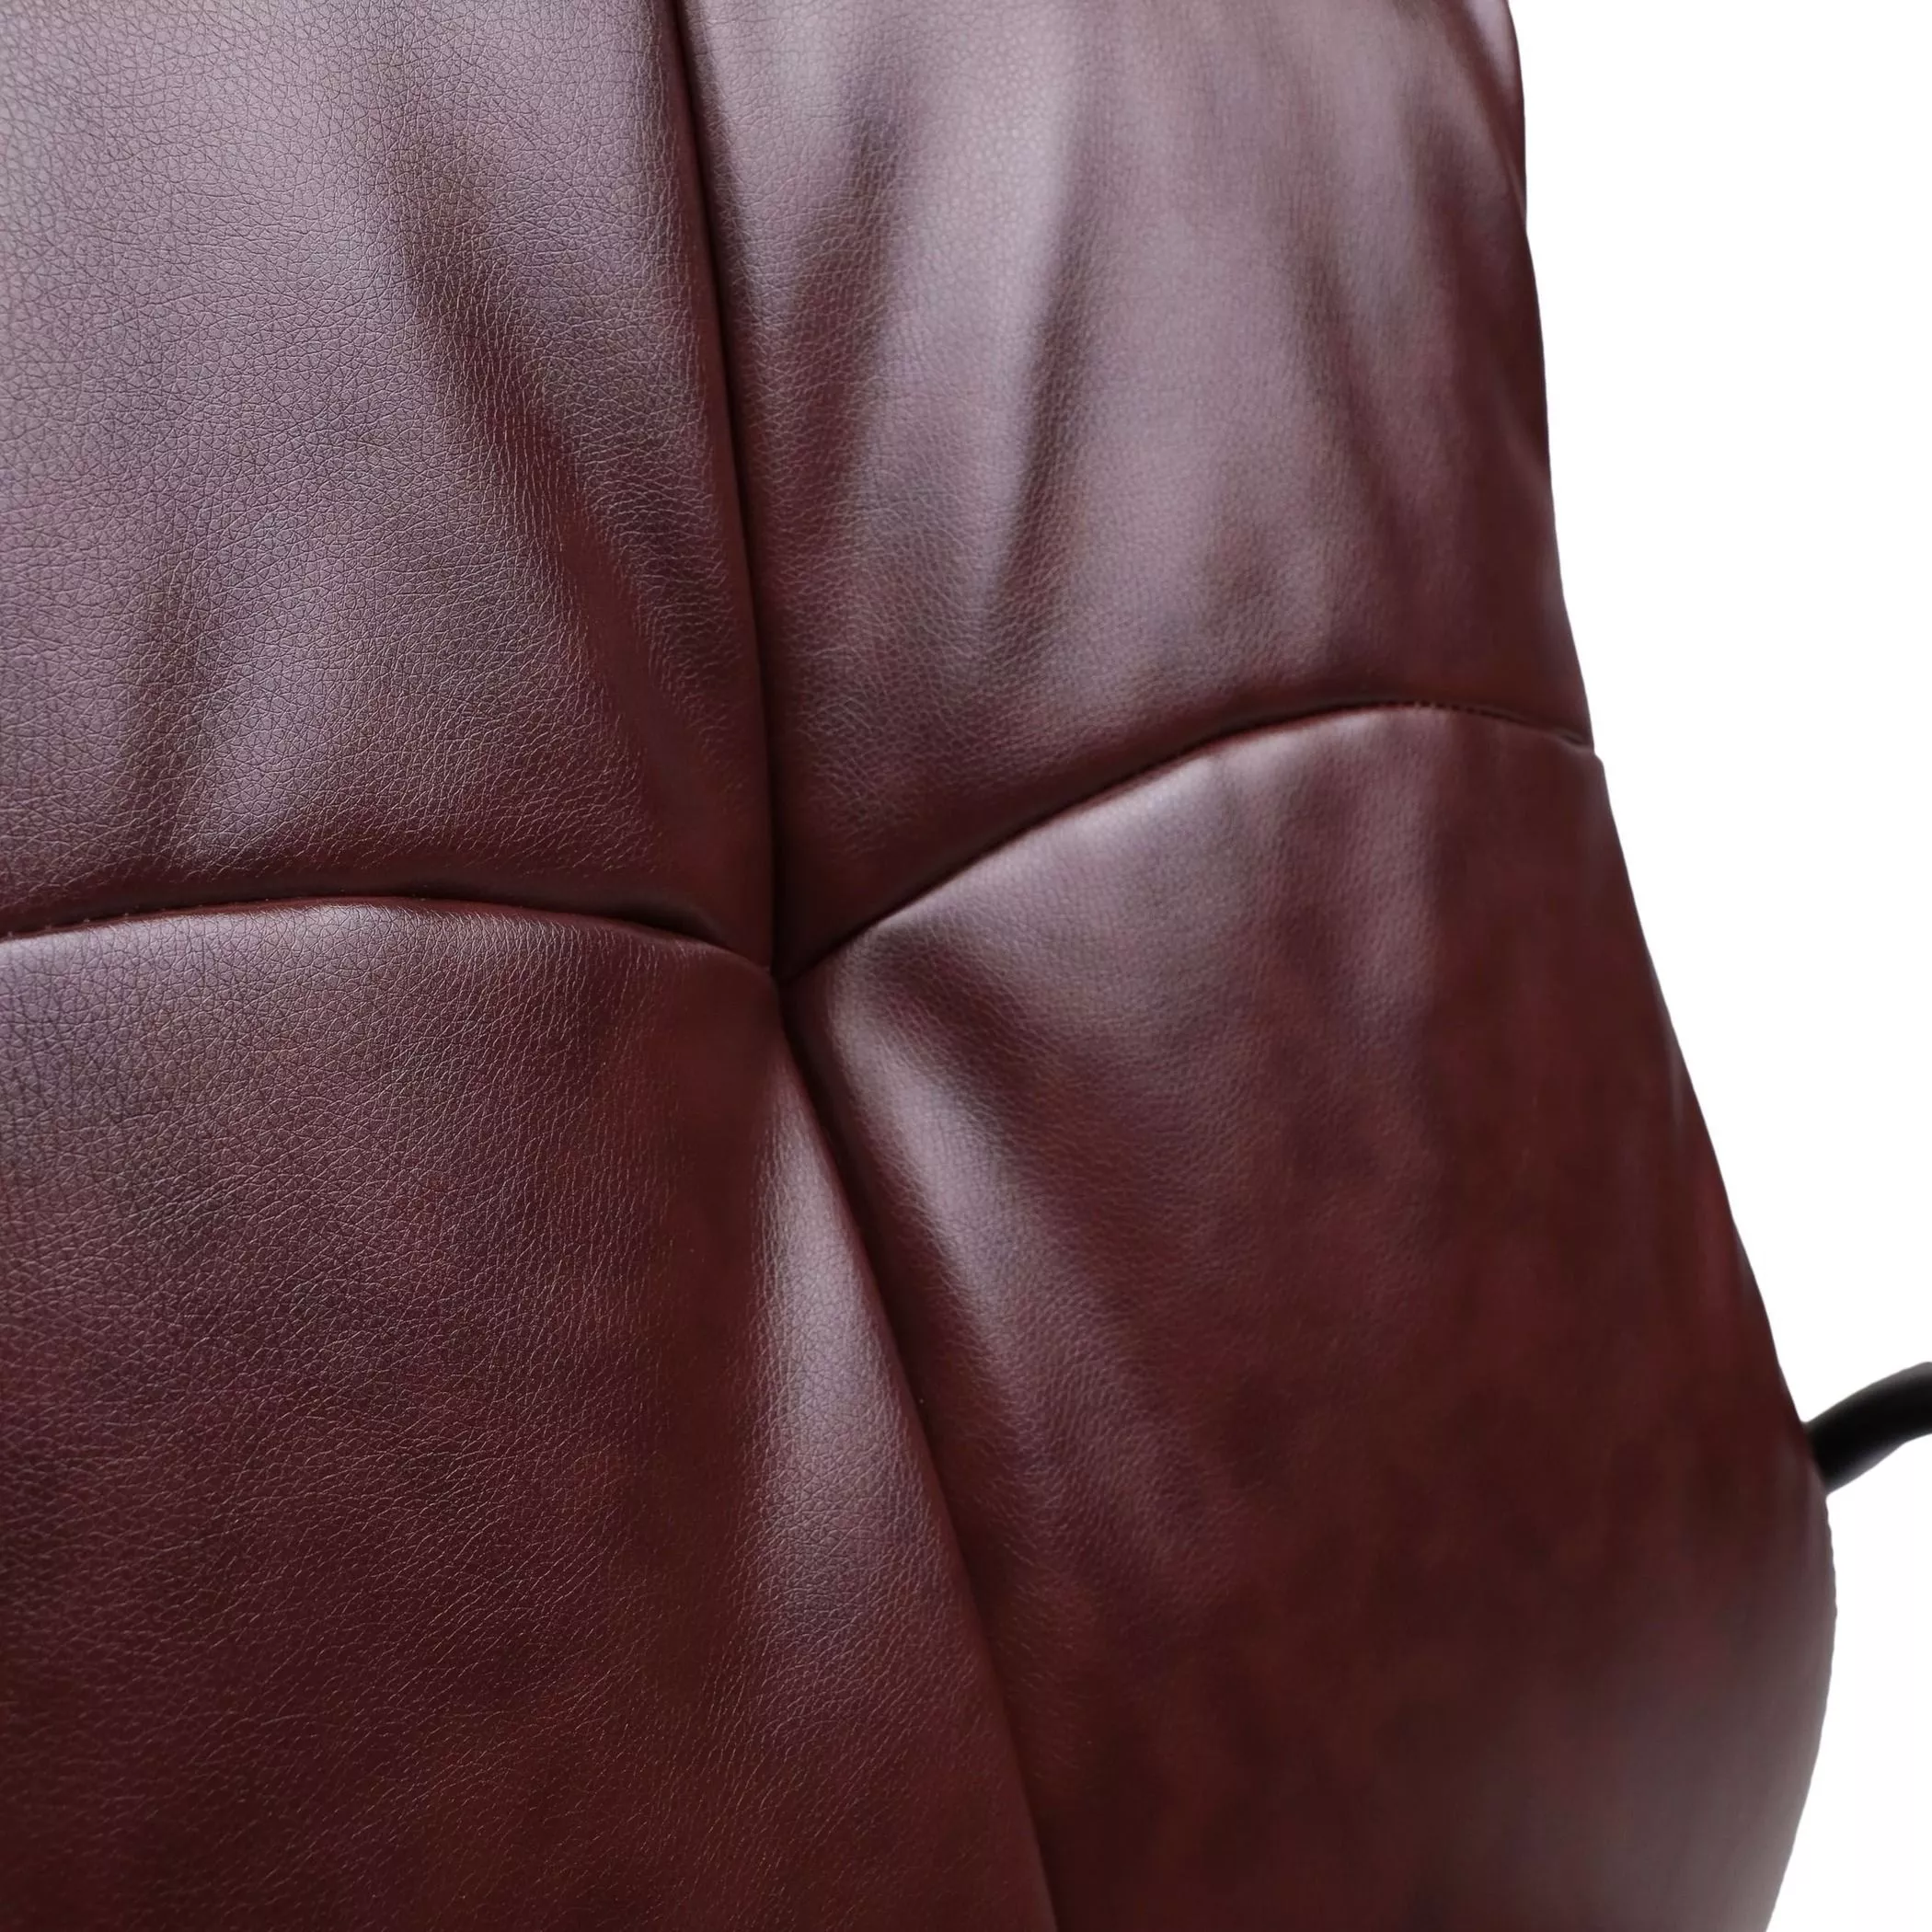 Кресло на полозьях Klio коричневый